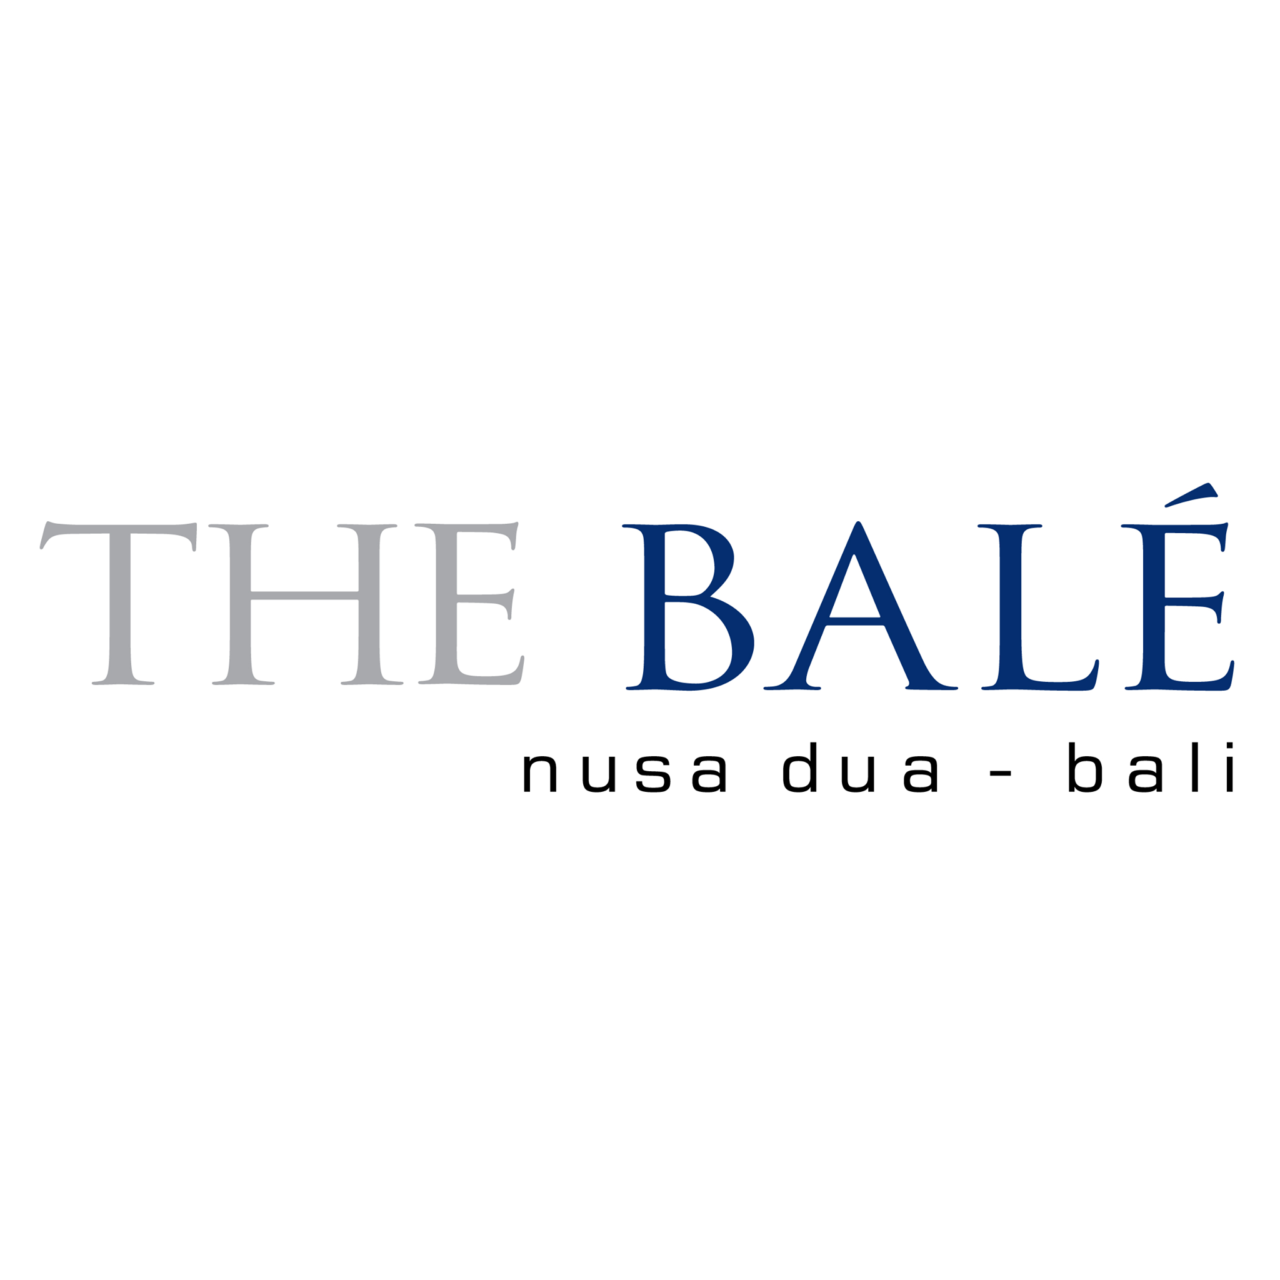 Bale-logo